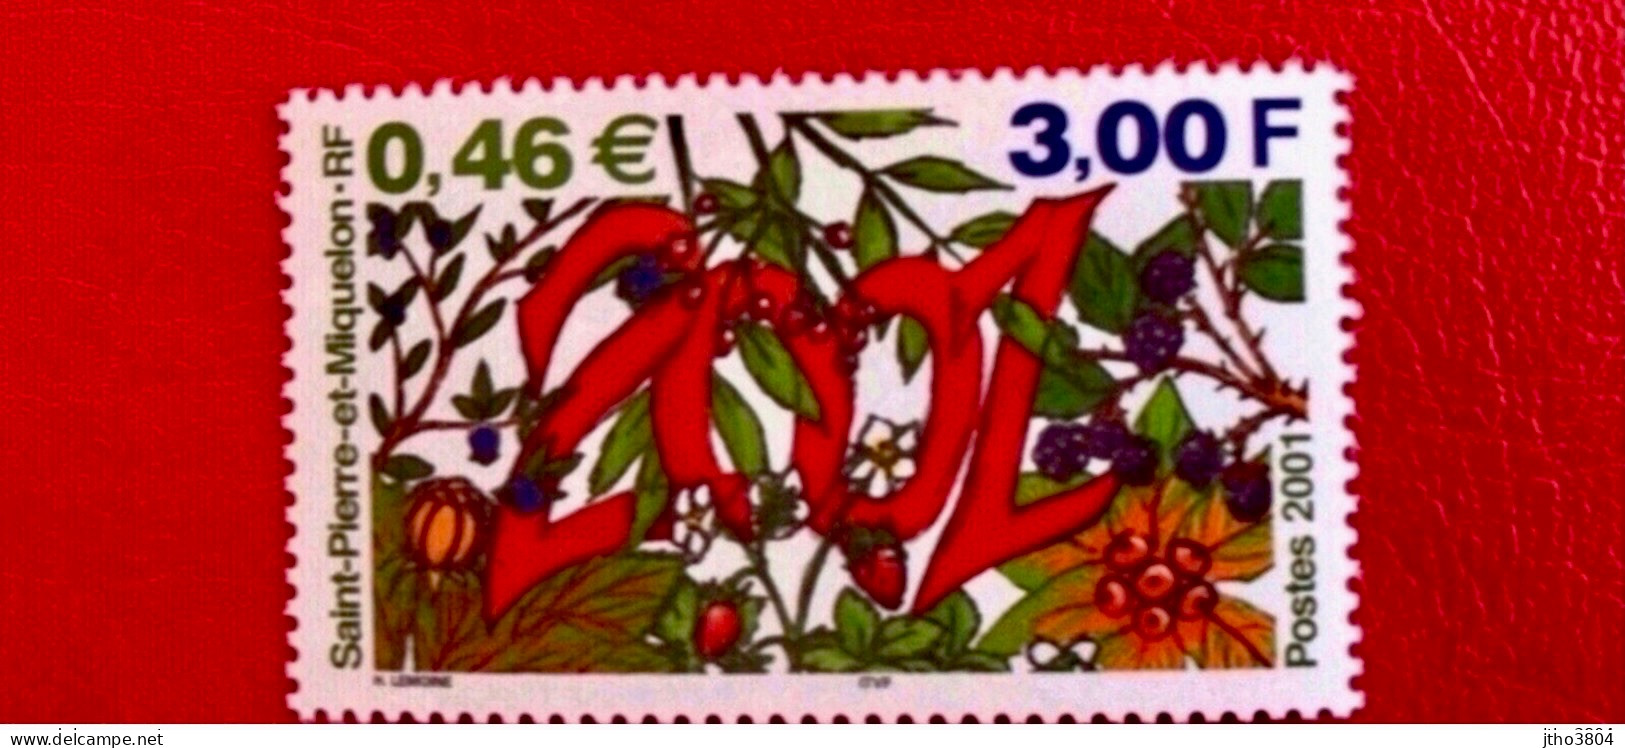 SAINT PIERRE ET MIQUELON SPM 2001  - 1 V MNH ** Fleurs YT 737 - Unused Stamps